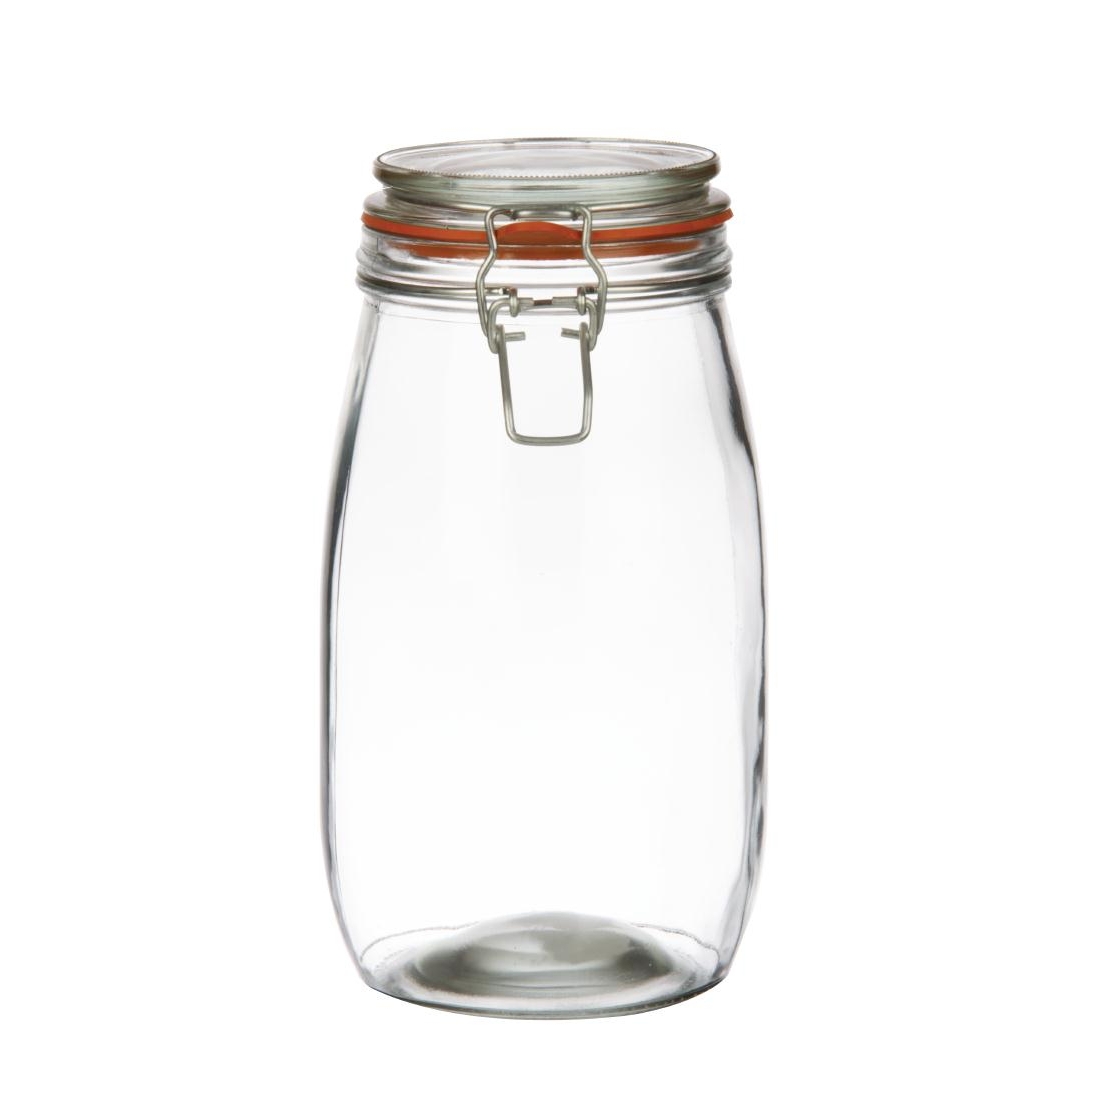 Vogue Clip Top Preserve Jar 1.5Ltr